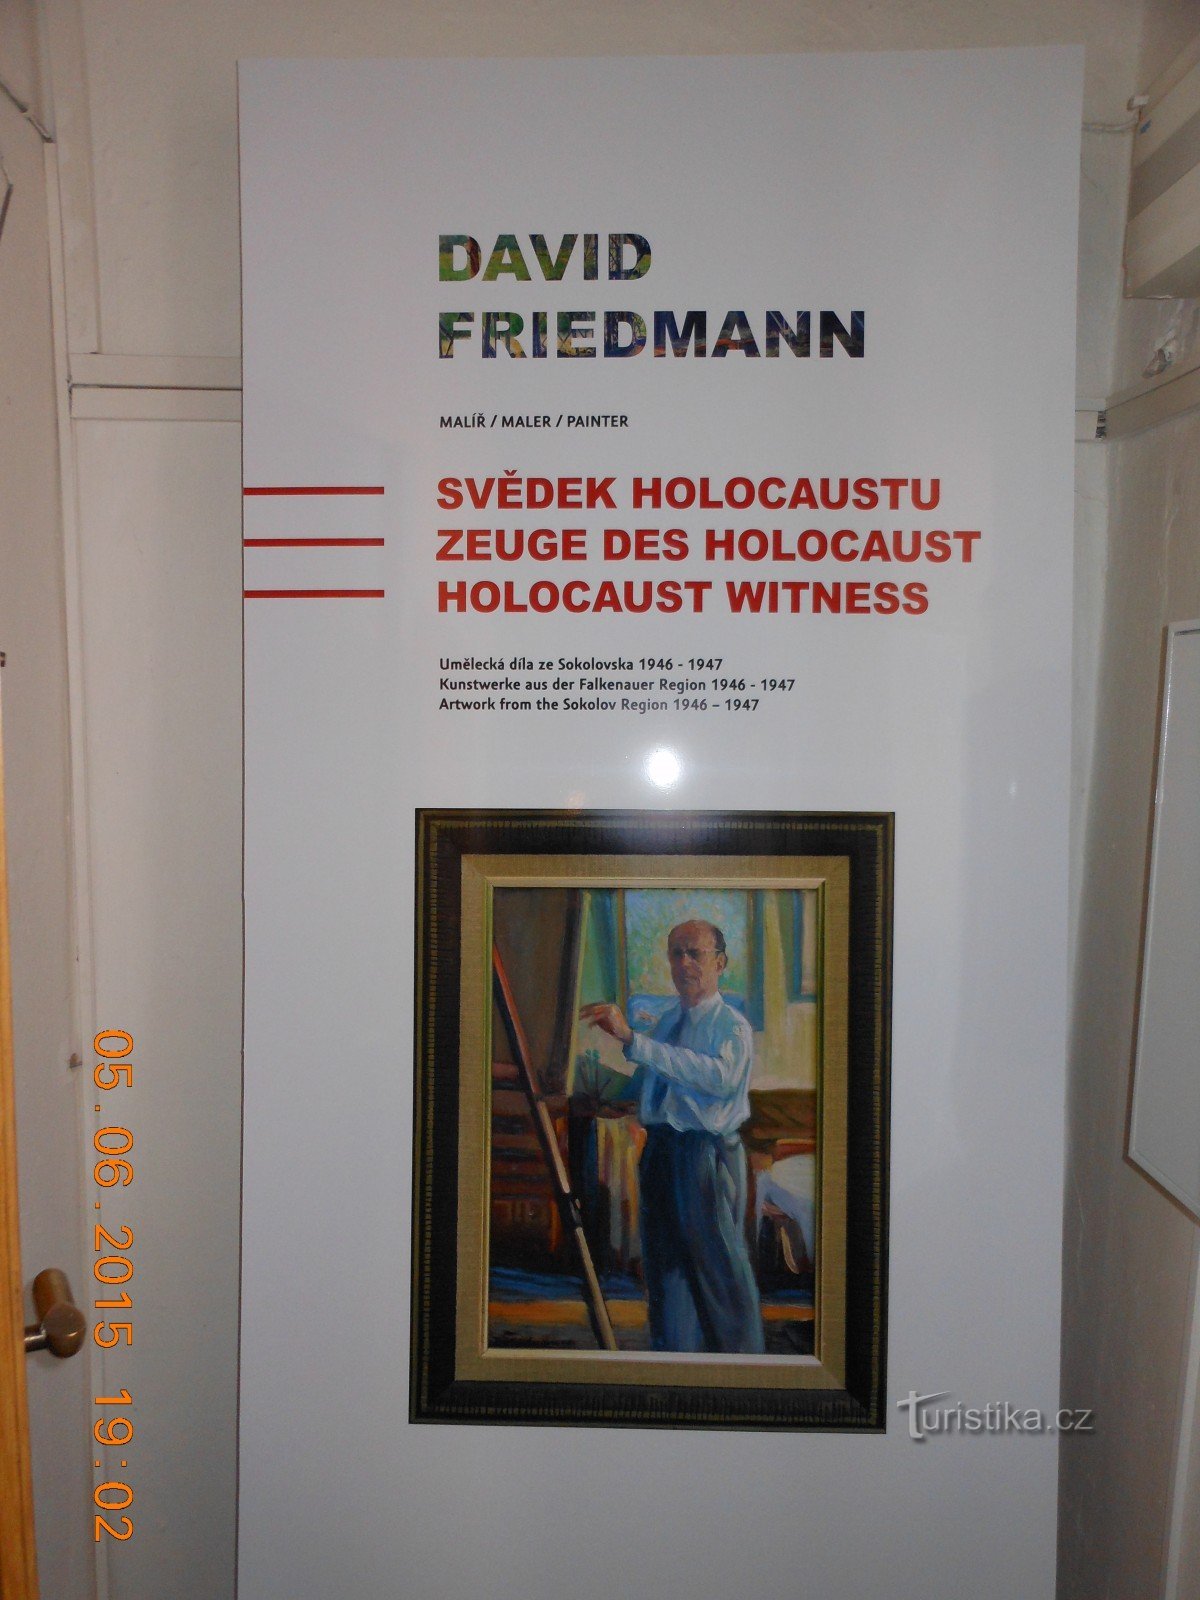 DAVID FRIEDMANN kiállítás - Sokolov Múzeum